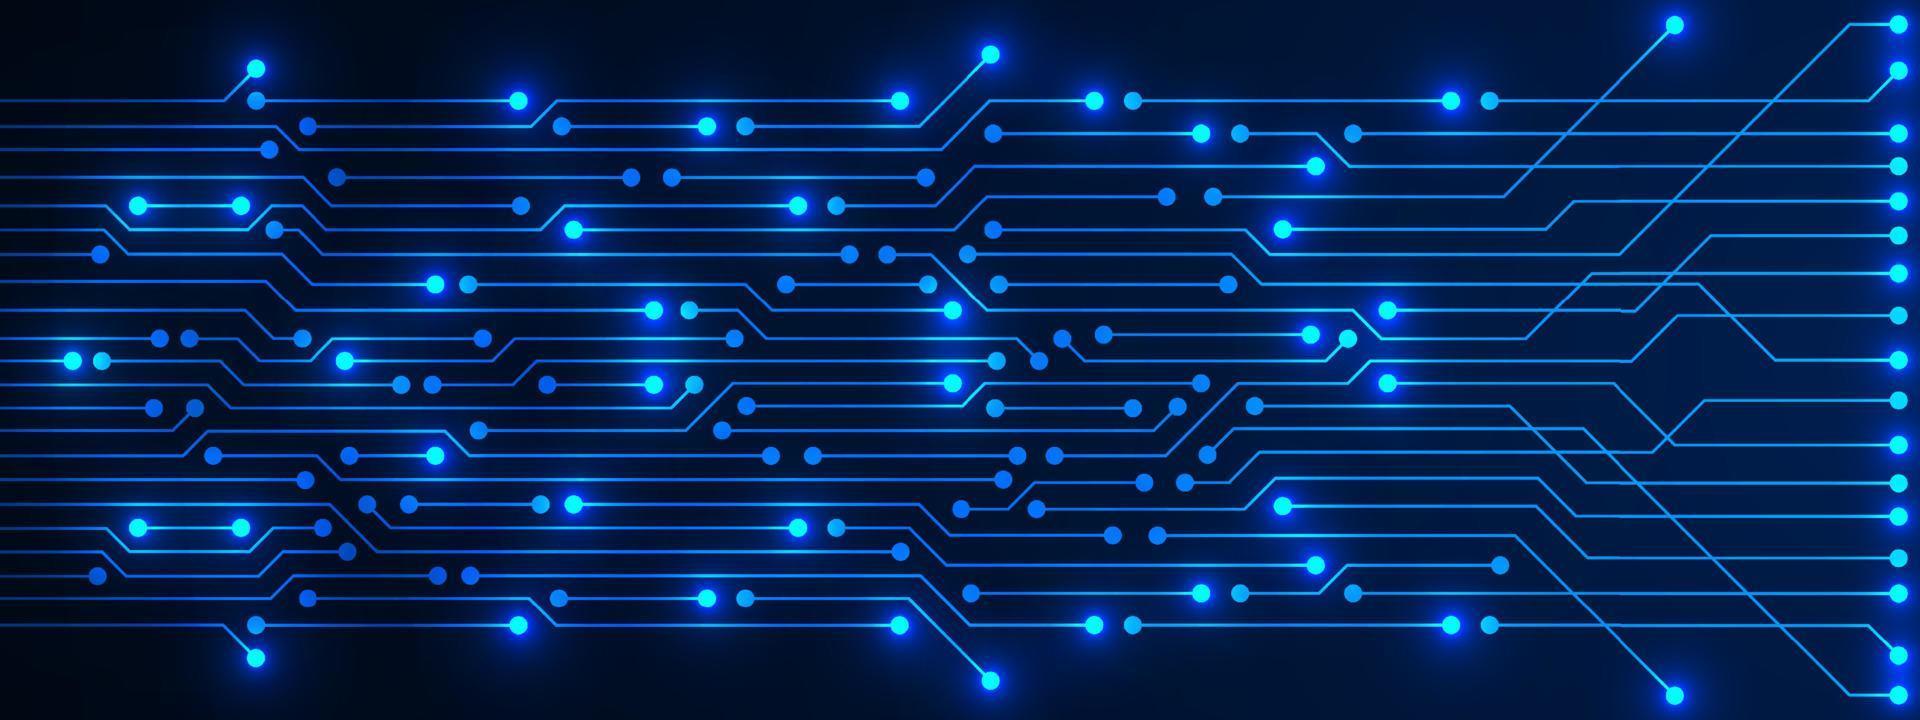 arrière-plan technologique abstrait, motif de circuit imprimé bleu avec lumière électrique, puce électronique, ligne électrique vecteur